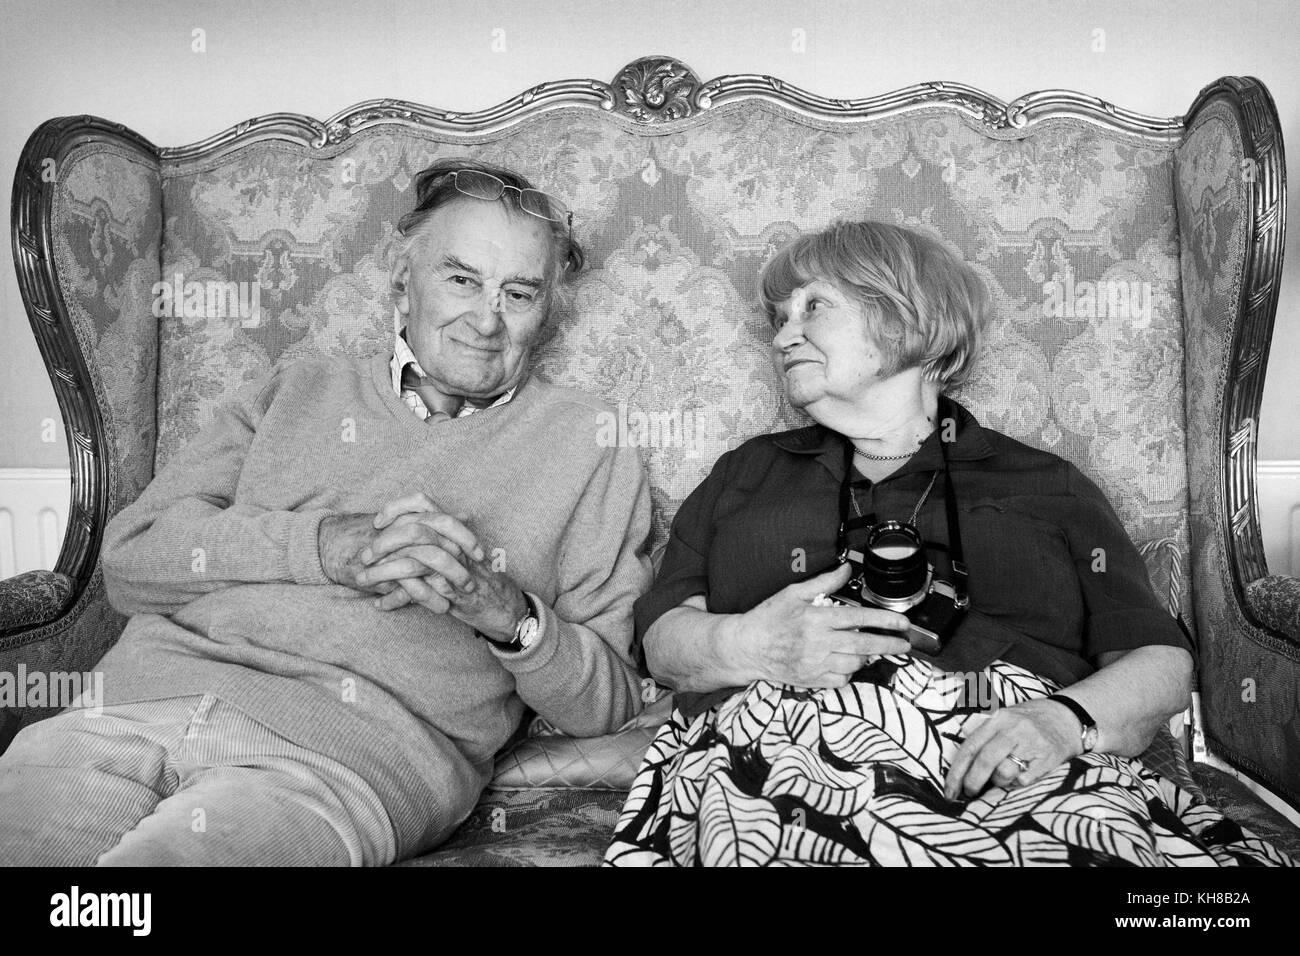 Photographe Jane Bown (13 mars 1925 - 21 décembre 2014) et dessinateur/ Illustrateur Haro Hodson, B&W woman sitting on sofa Banque D'Images